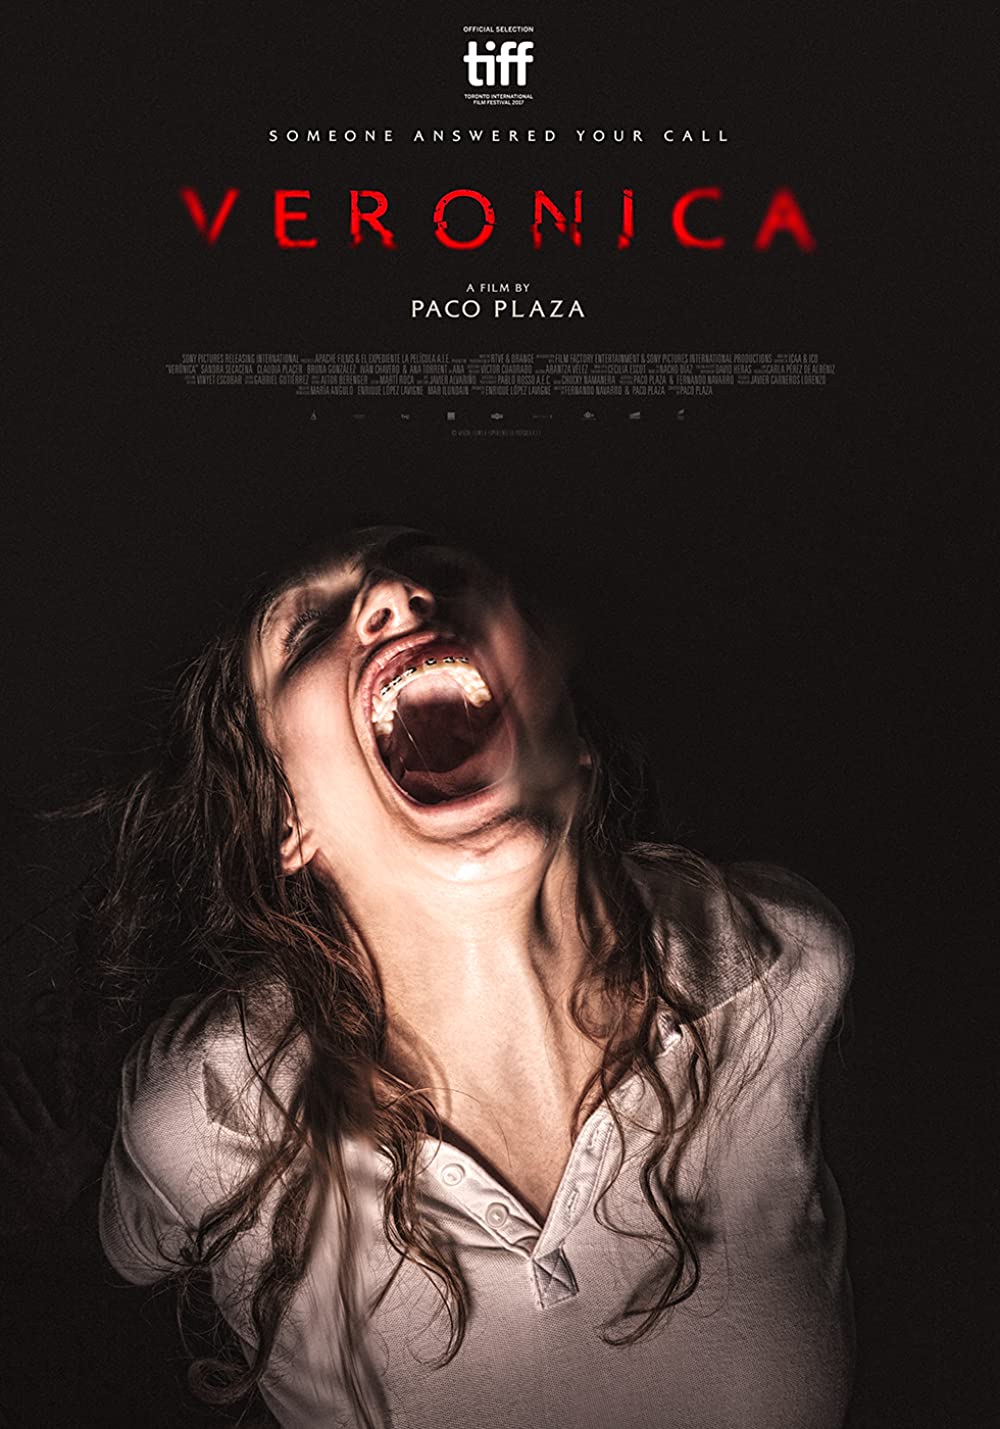 ดูหนังออนไลน์ฟรี Veronica (2017) กระดานผีปลุกวิญญาณ หนังเต็มเรื่อง หนังมาสเตอร์ ดูหนังHD ดูหนังออนไลน์ ดูหนังใหม่